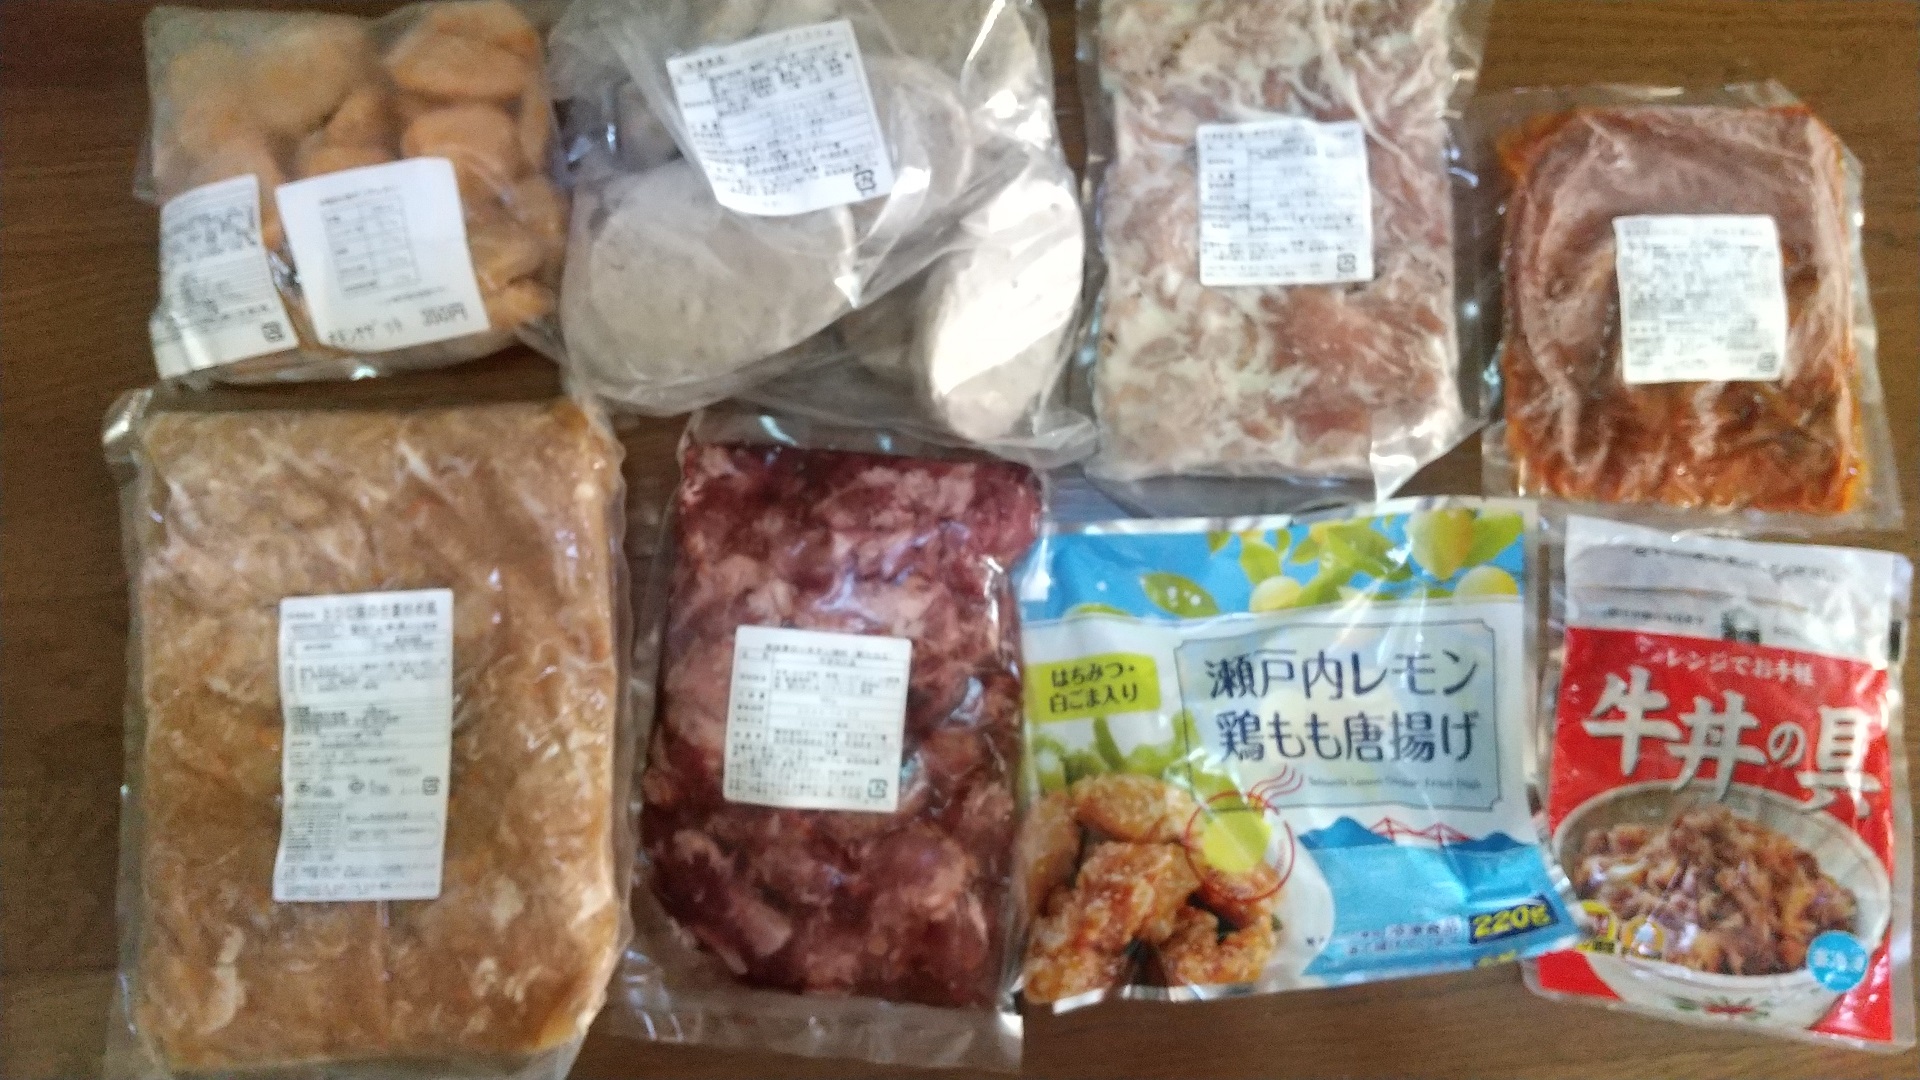 20230111_くまから本舗 冷凍食品